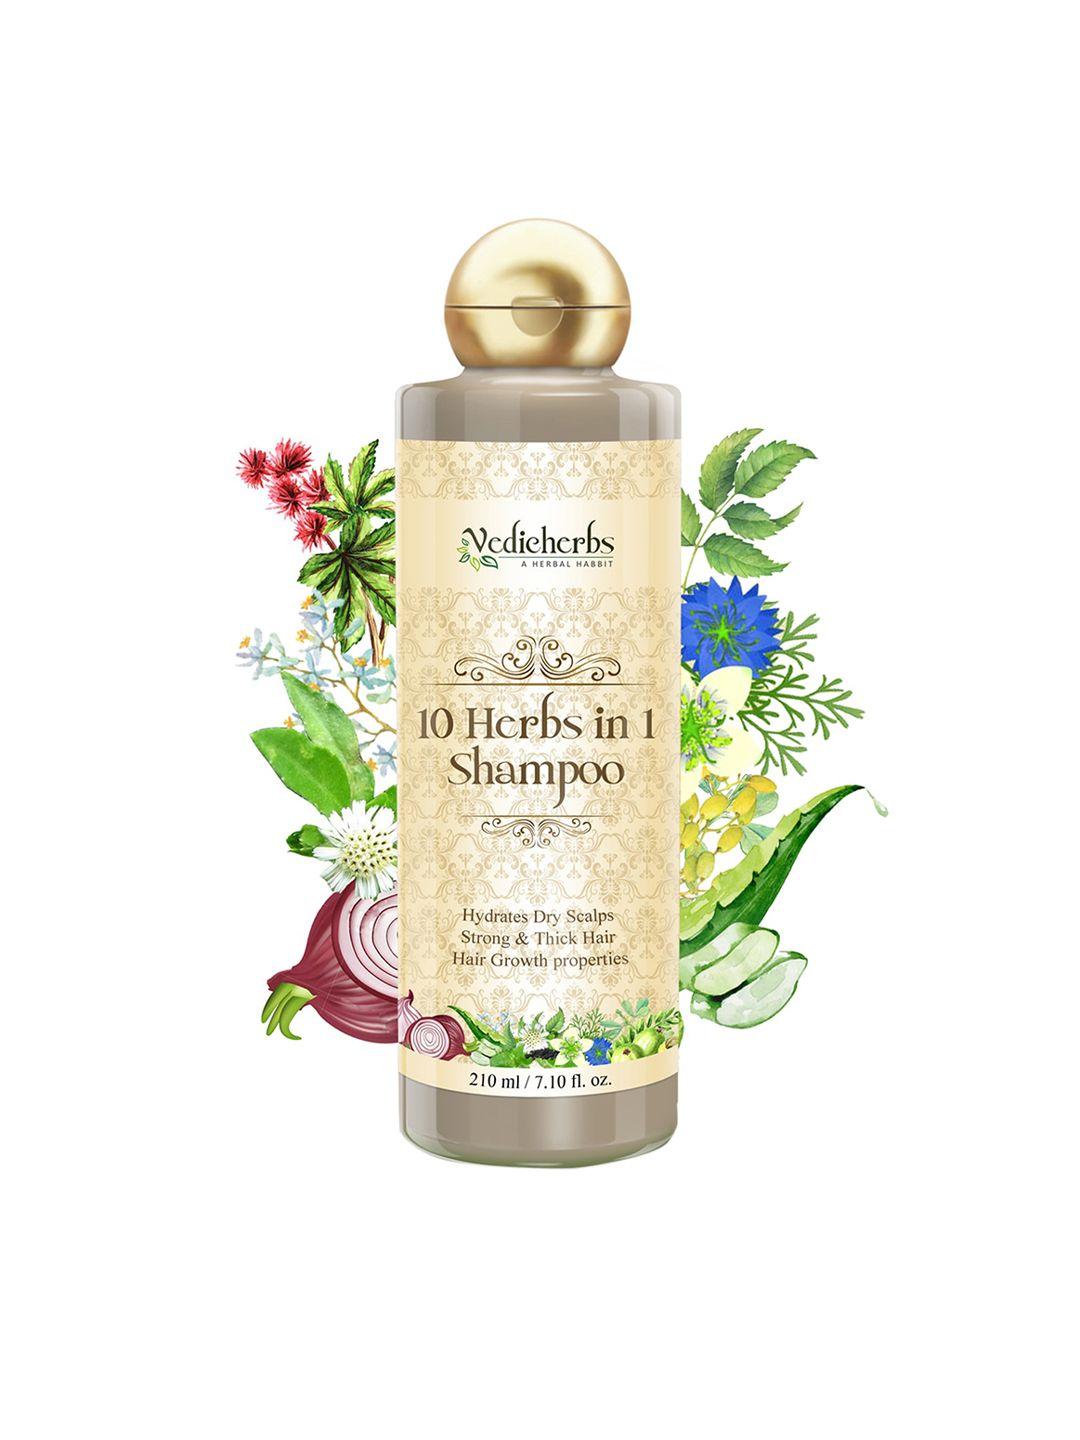 vedicherbs 10 herbs in 1 shampoo 210ml